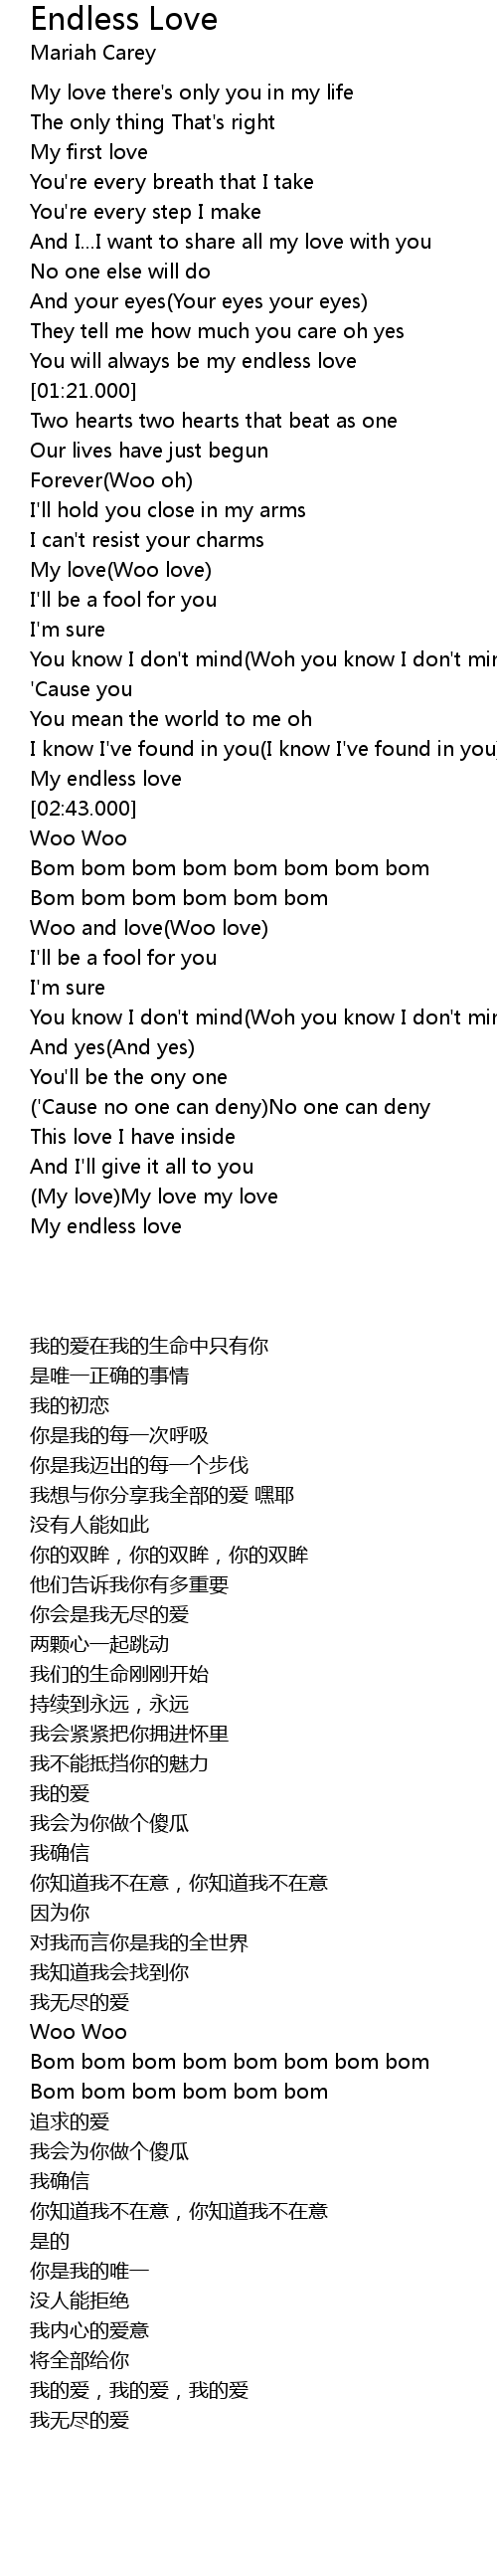 Endless love lyrics